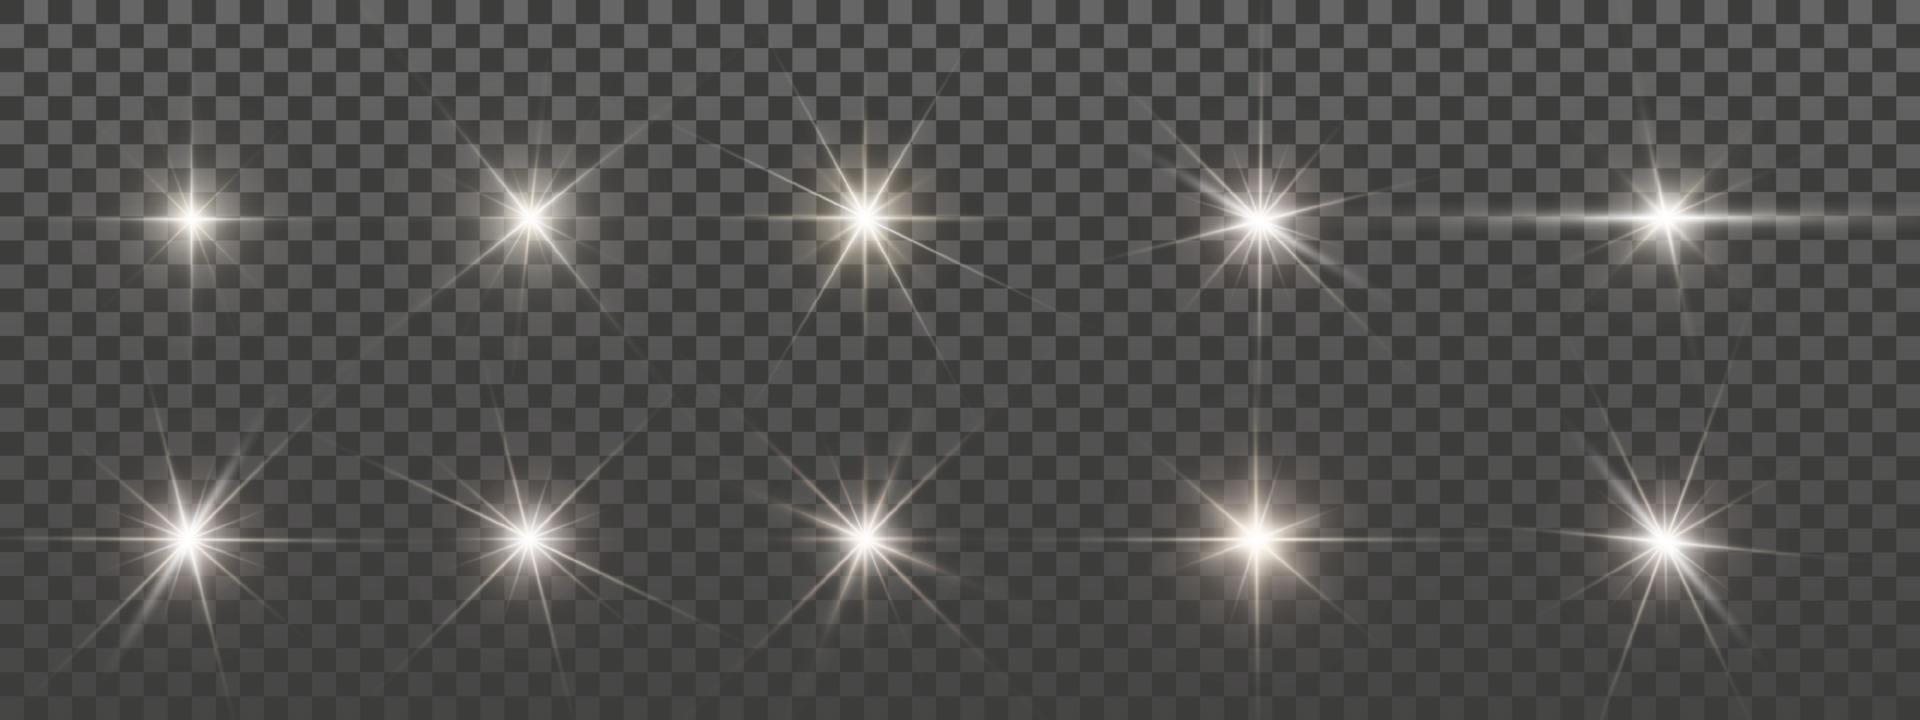 Reihe von Funken. leuchtende Sterne. Lens Flares und Sparkles-Vorlage. Vektor-Illustration vektor